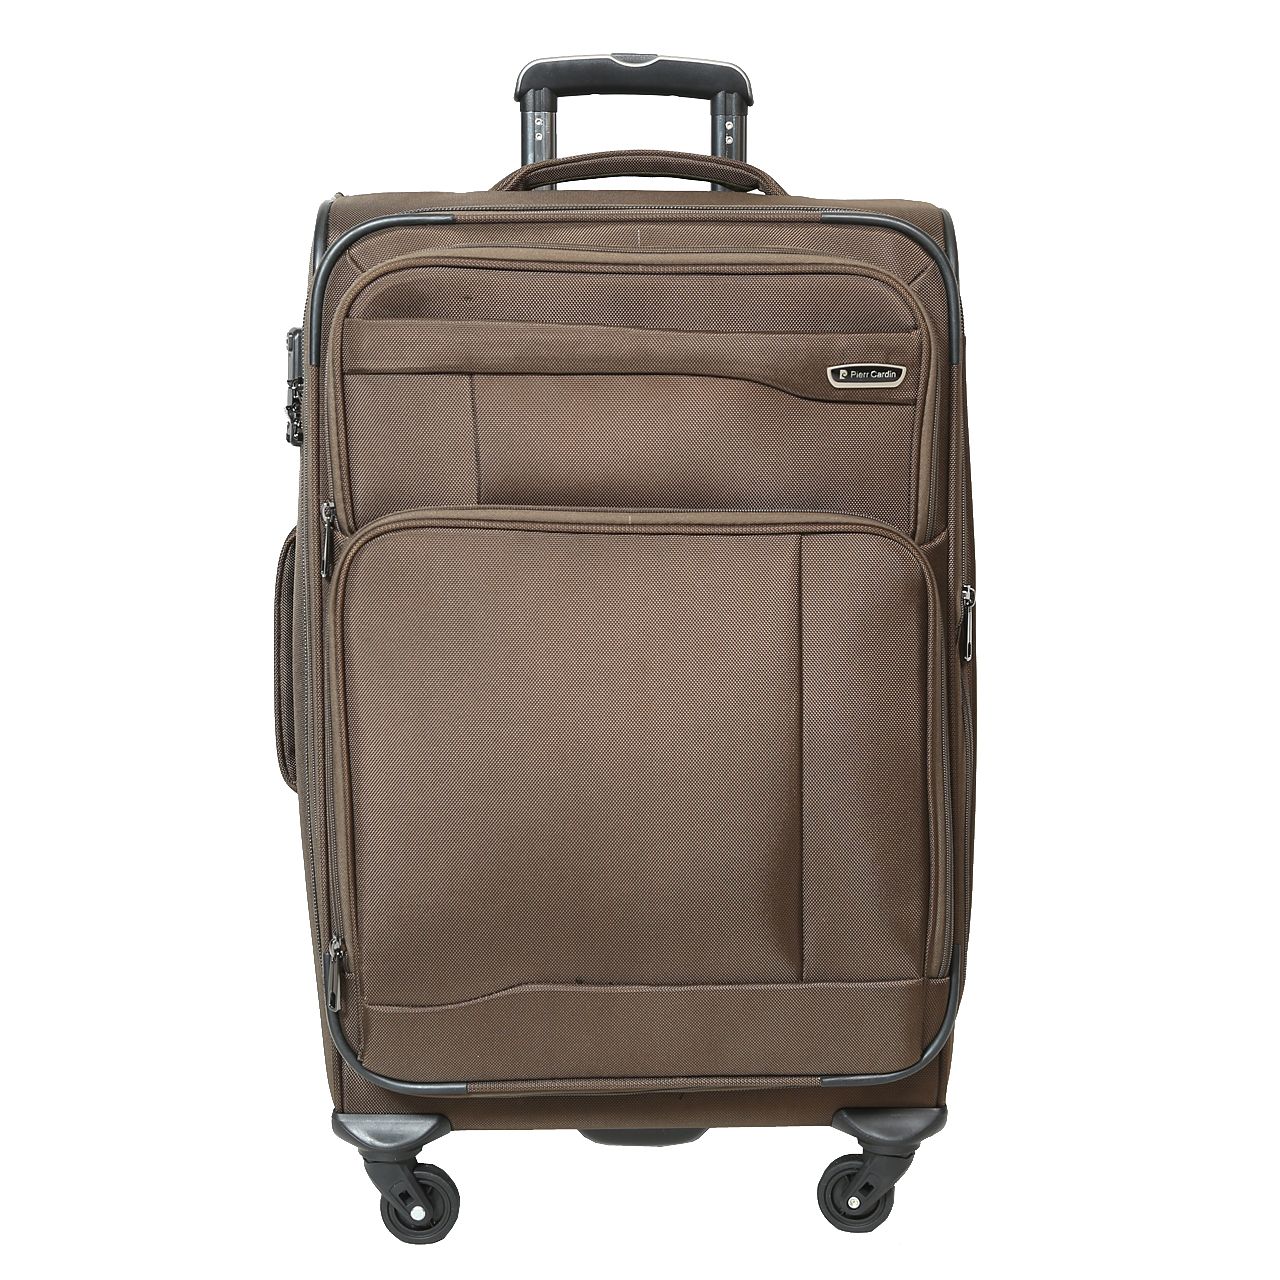  چمدان پیر کاردین مدل SBP1600 سایز متوسط  -  - 2